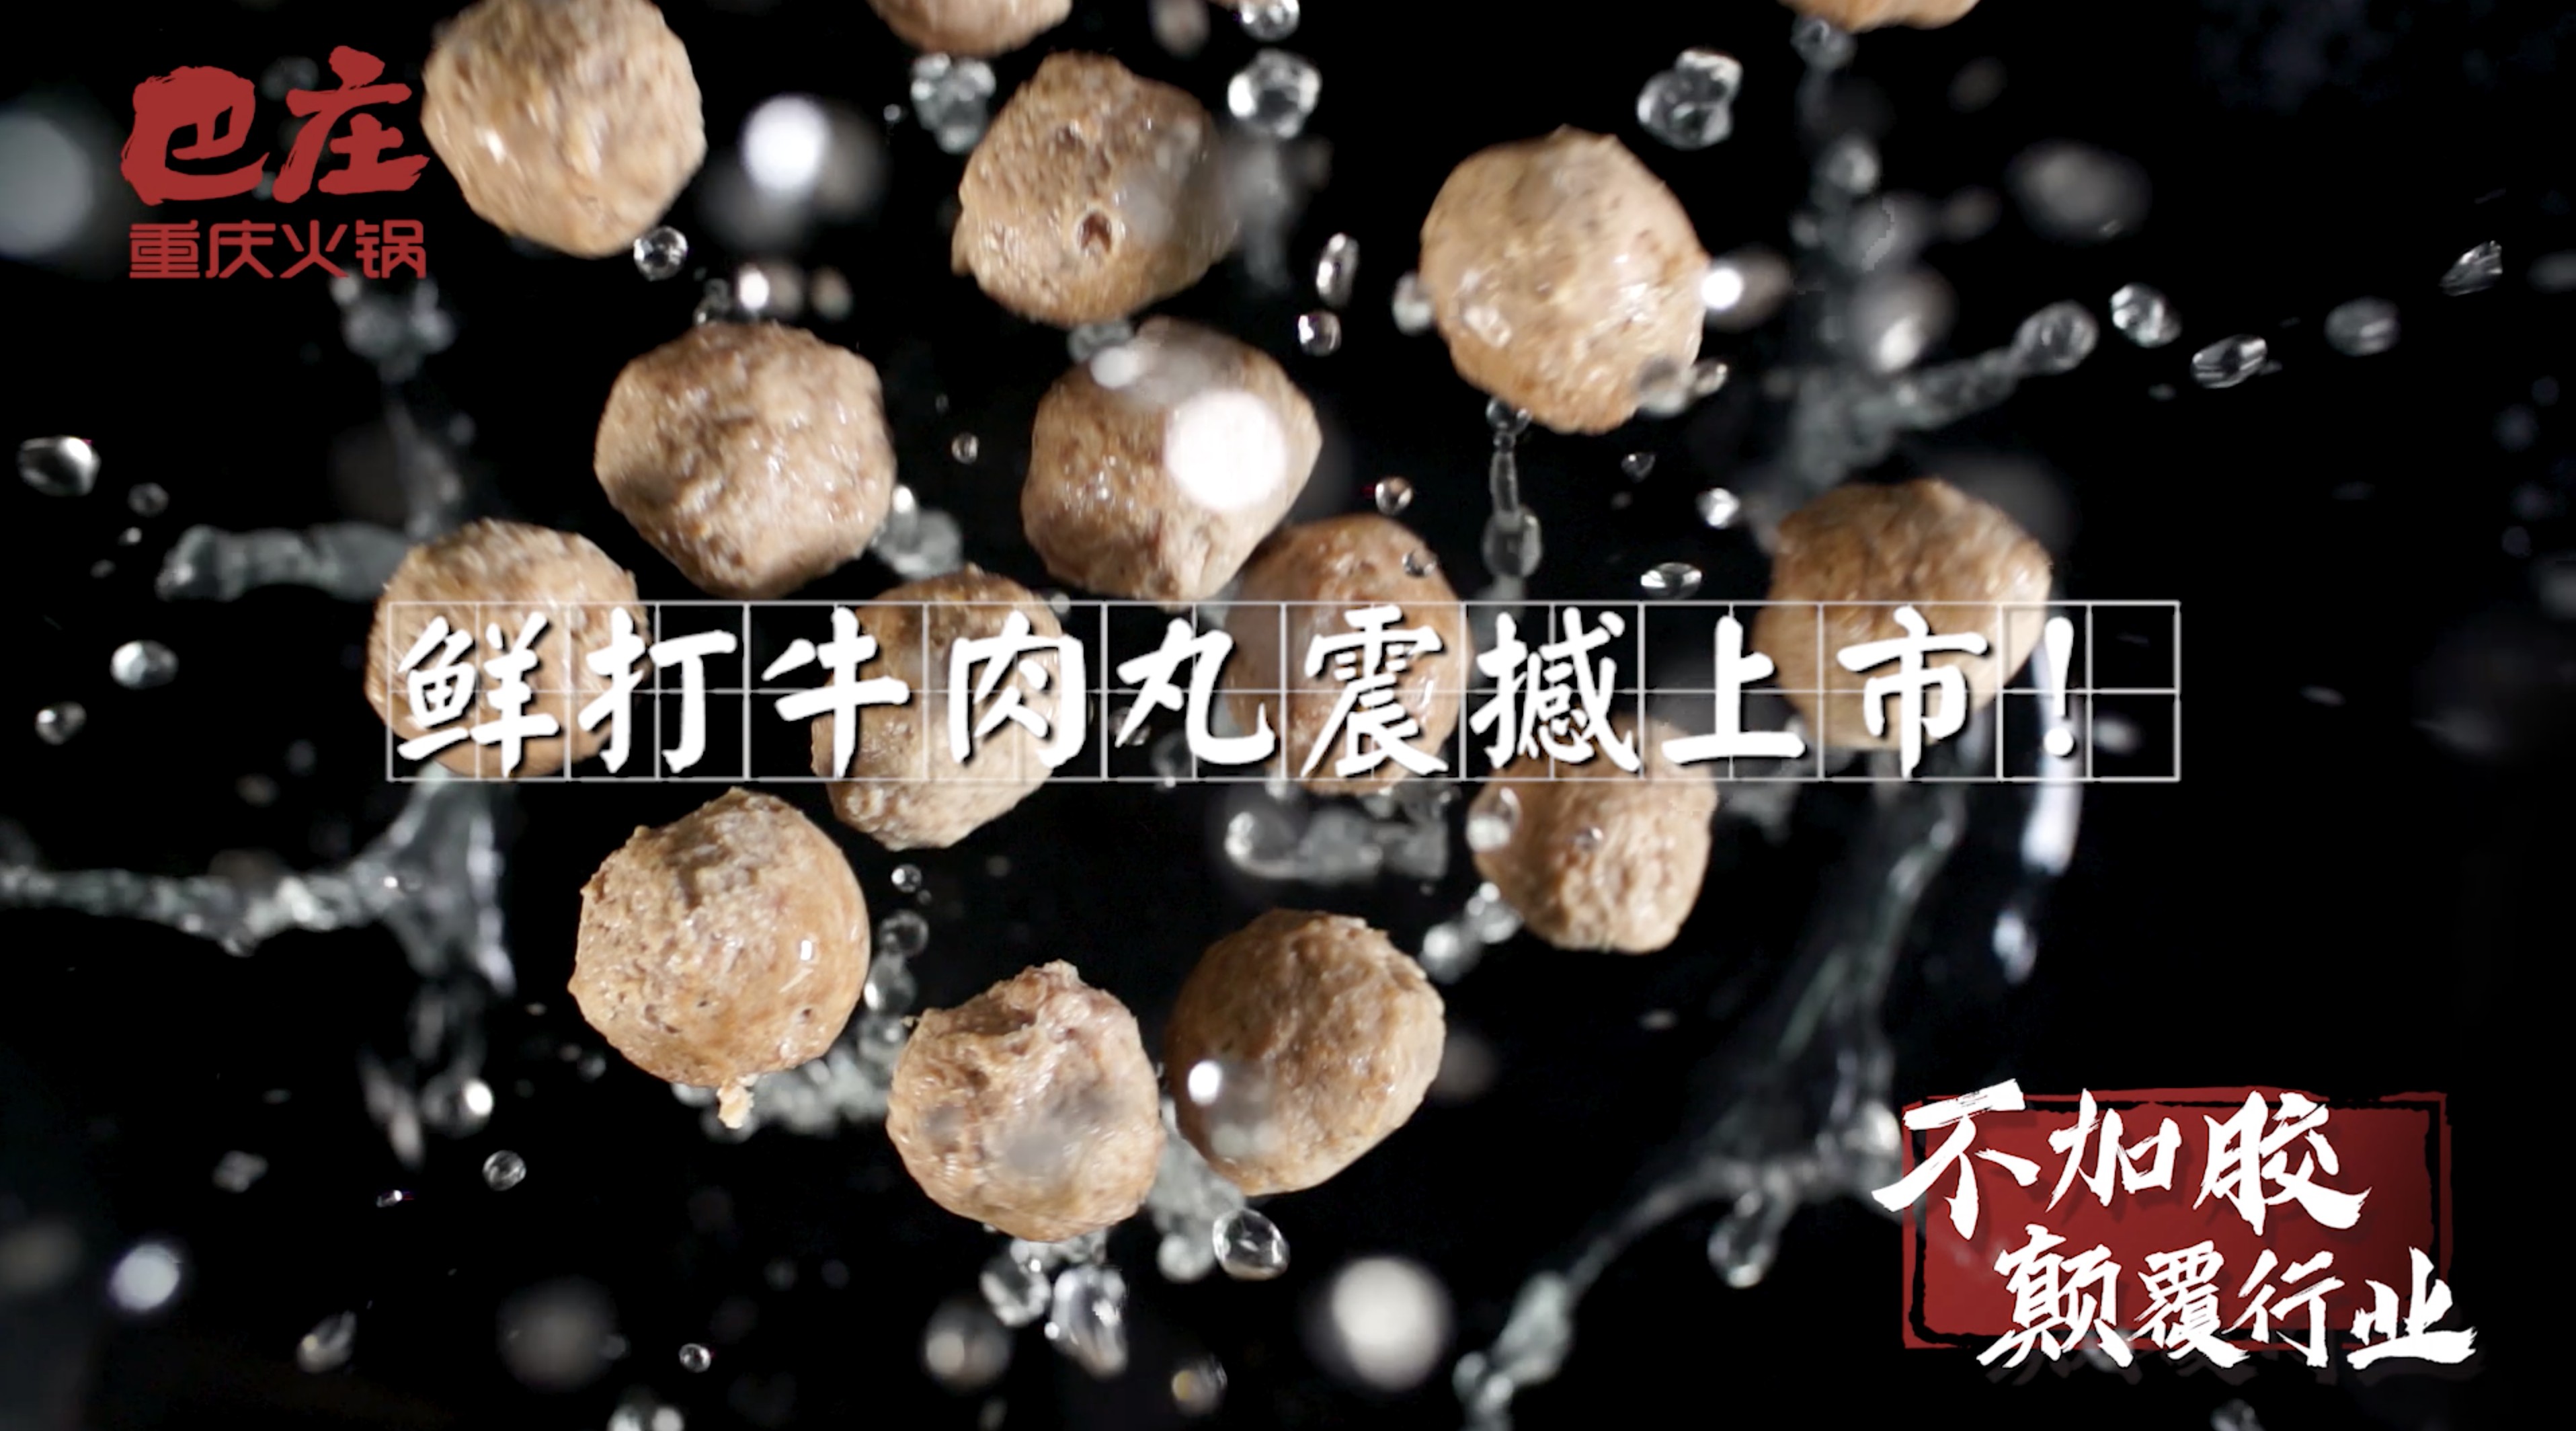 美食短视频——巴庄火锅鲜打牛肉丸 